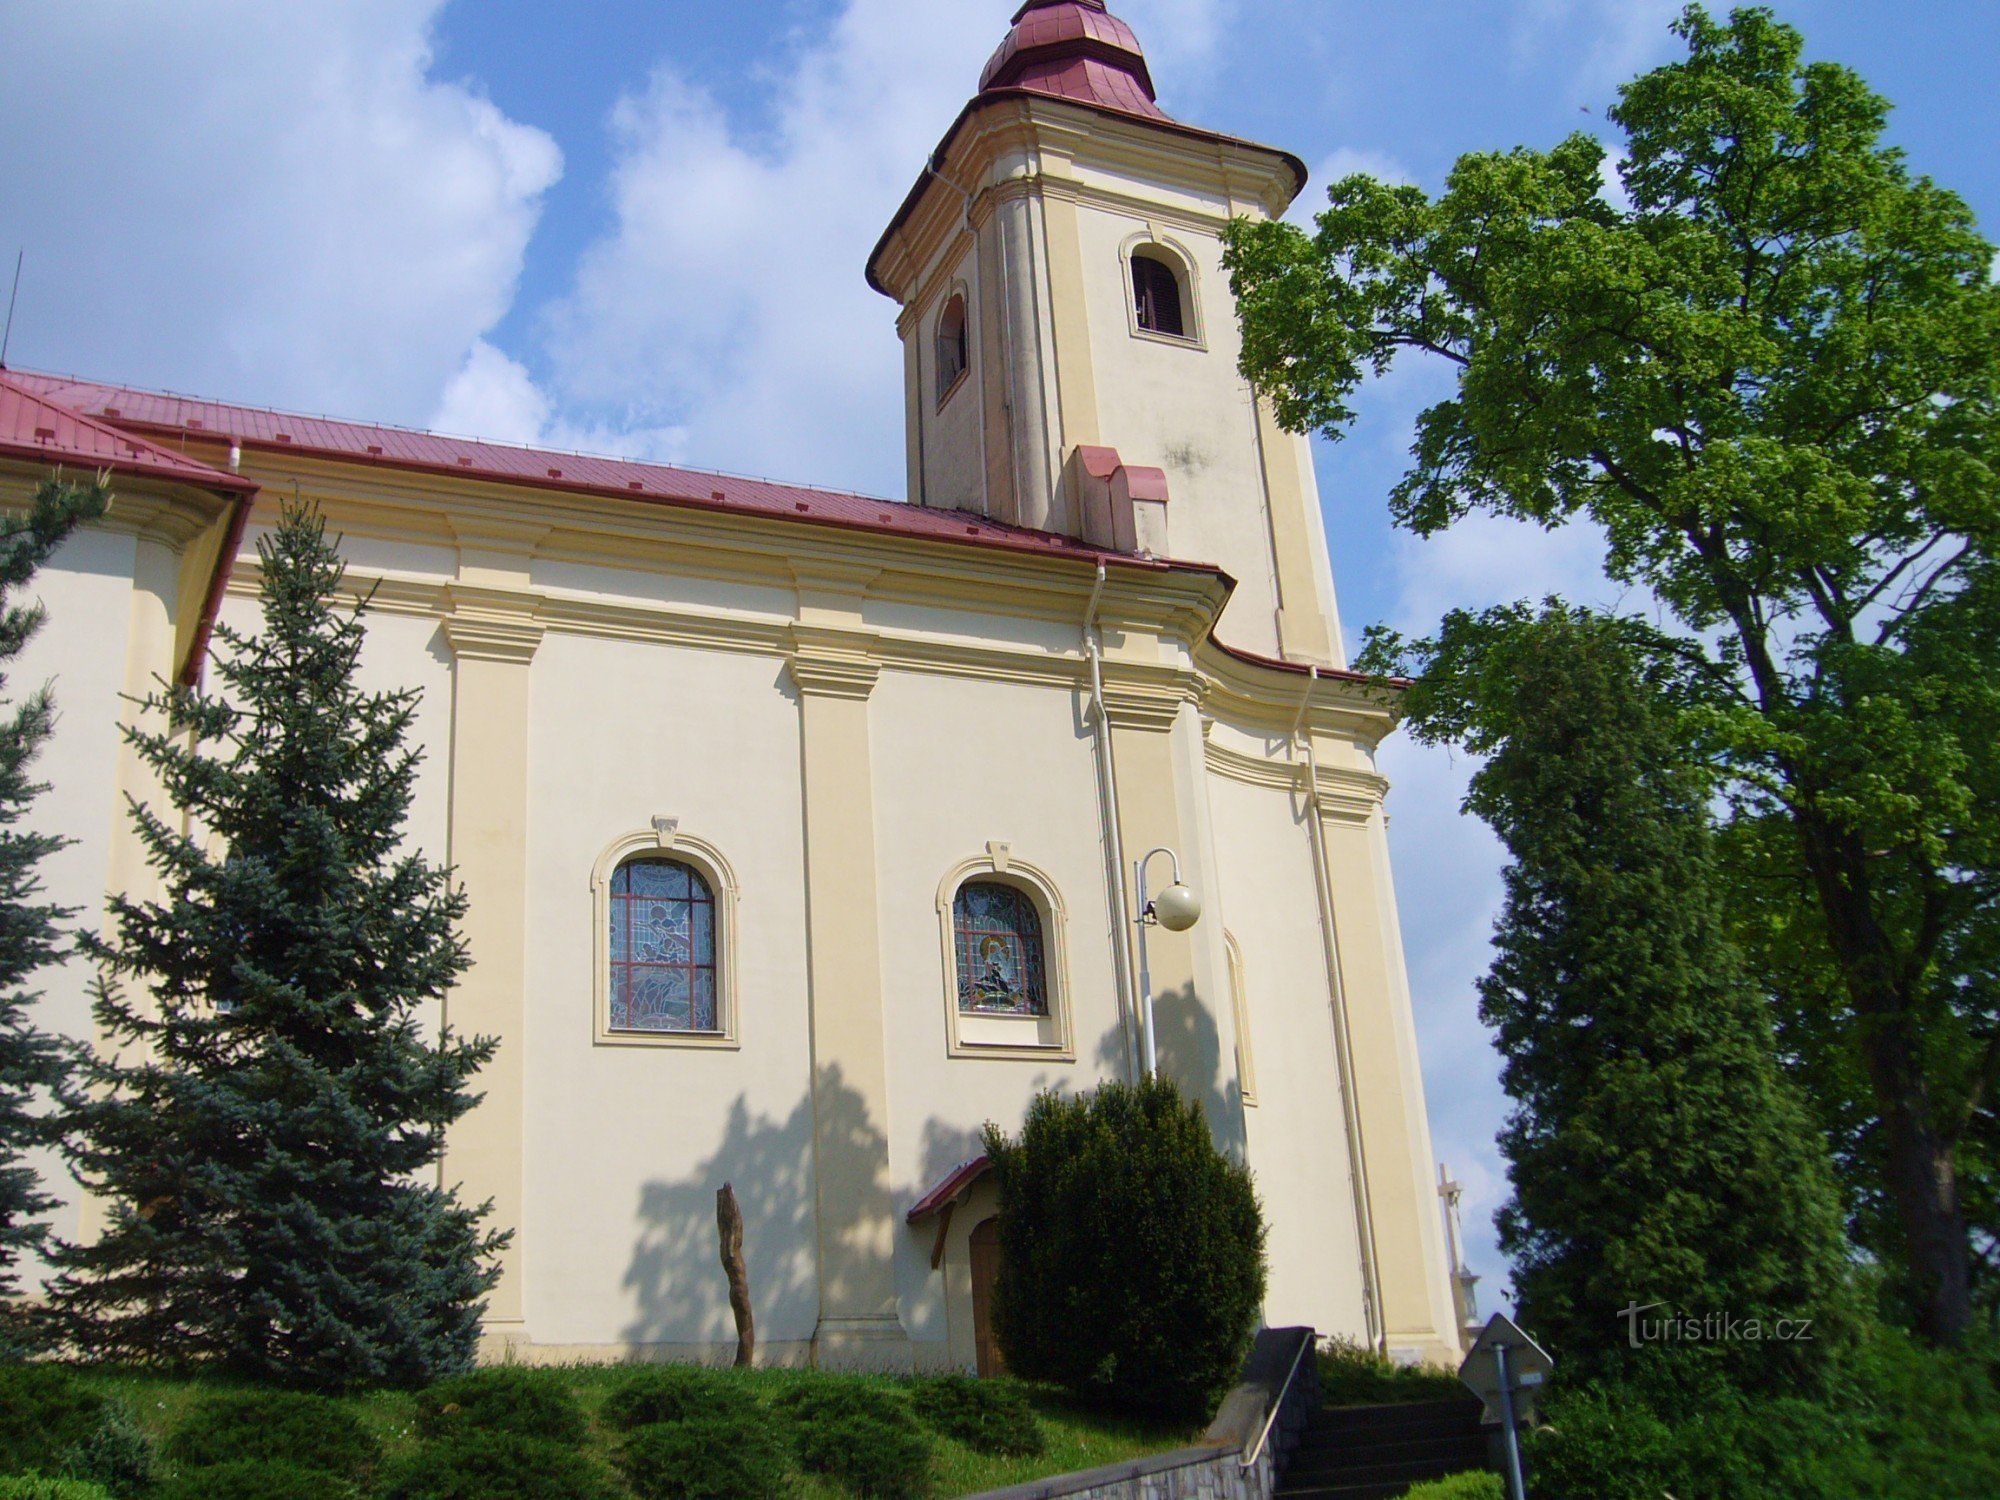 Plesná - Pyhän Nikolauksen kirkko. Jakub